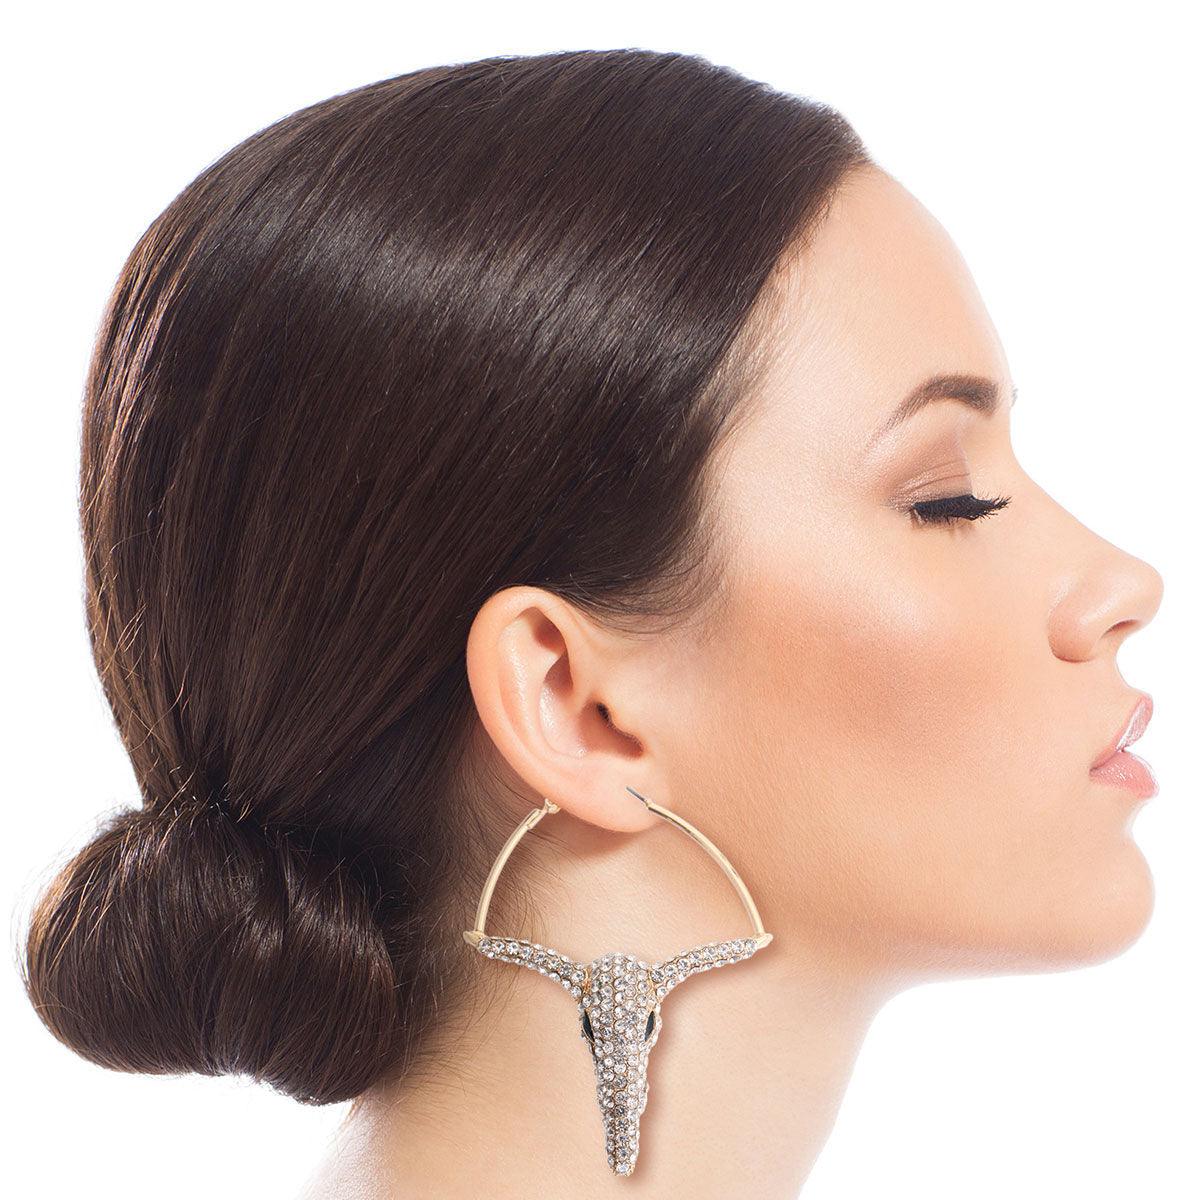 Dazzling Rhinestone Bullock Earrings: Sparkle in Style